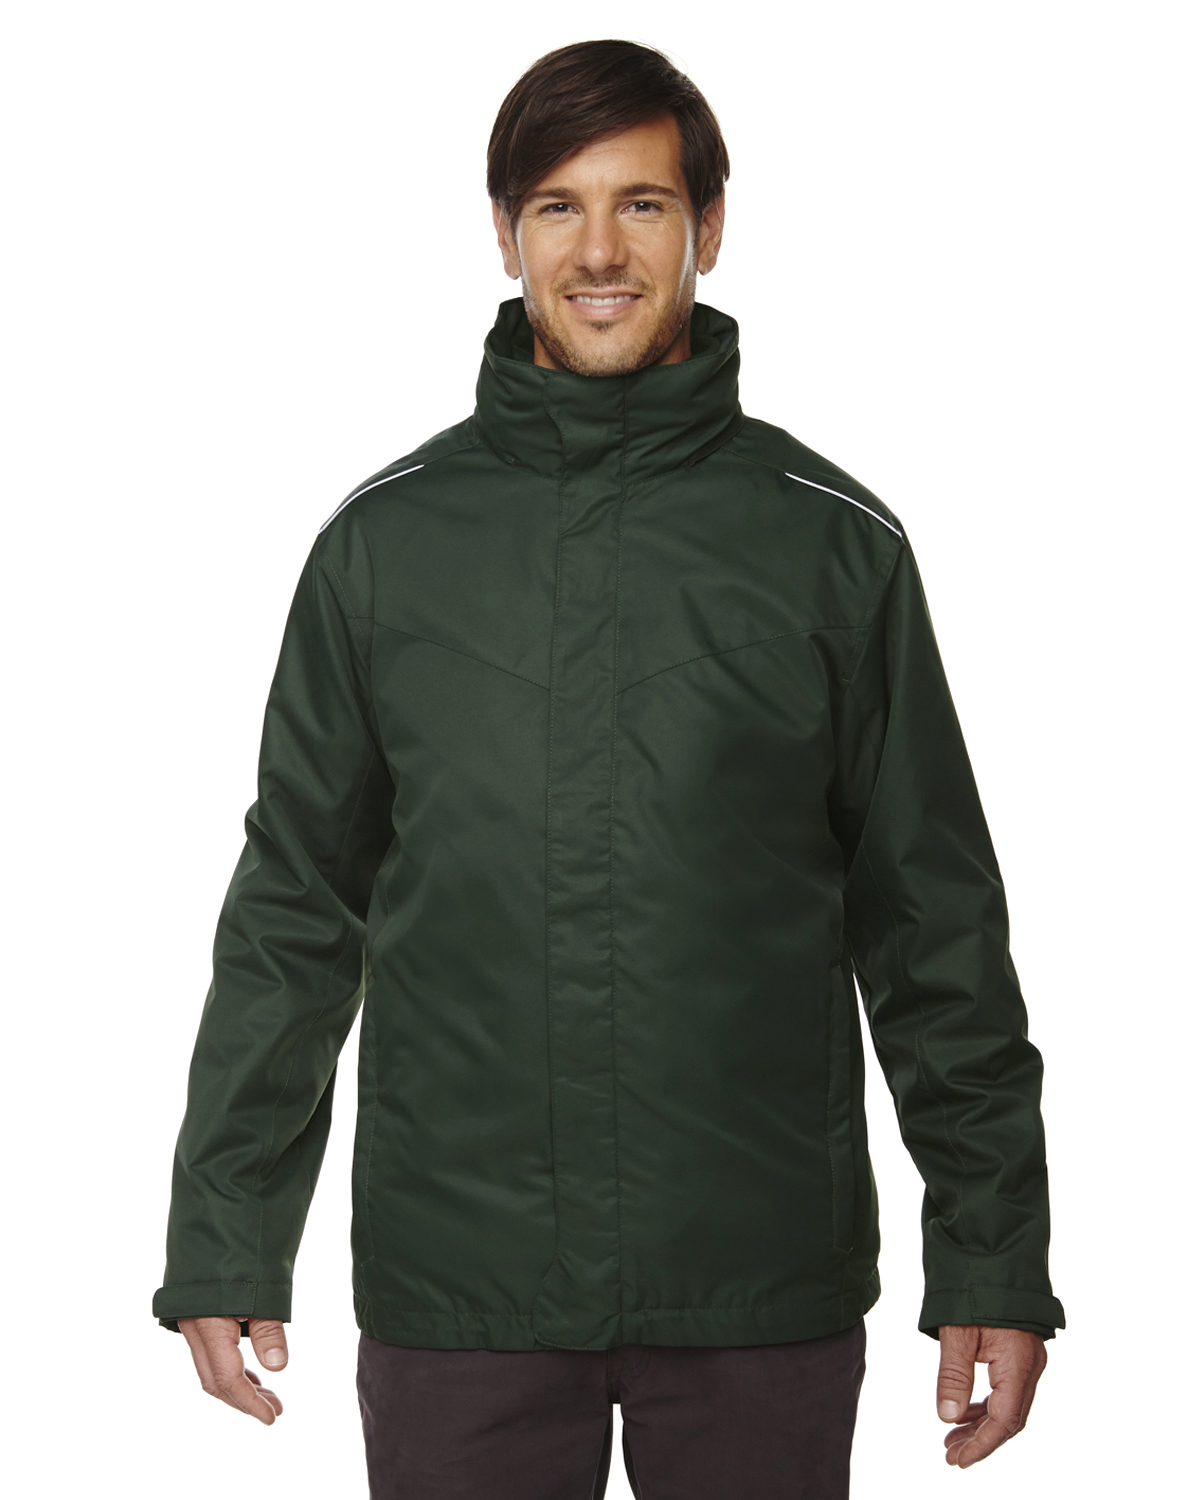 Men's 3-IN-1 Jacket with Fleece Liner